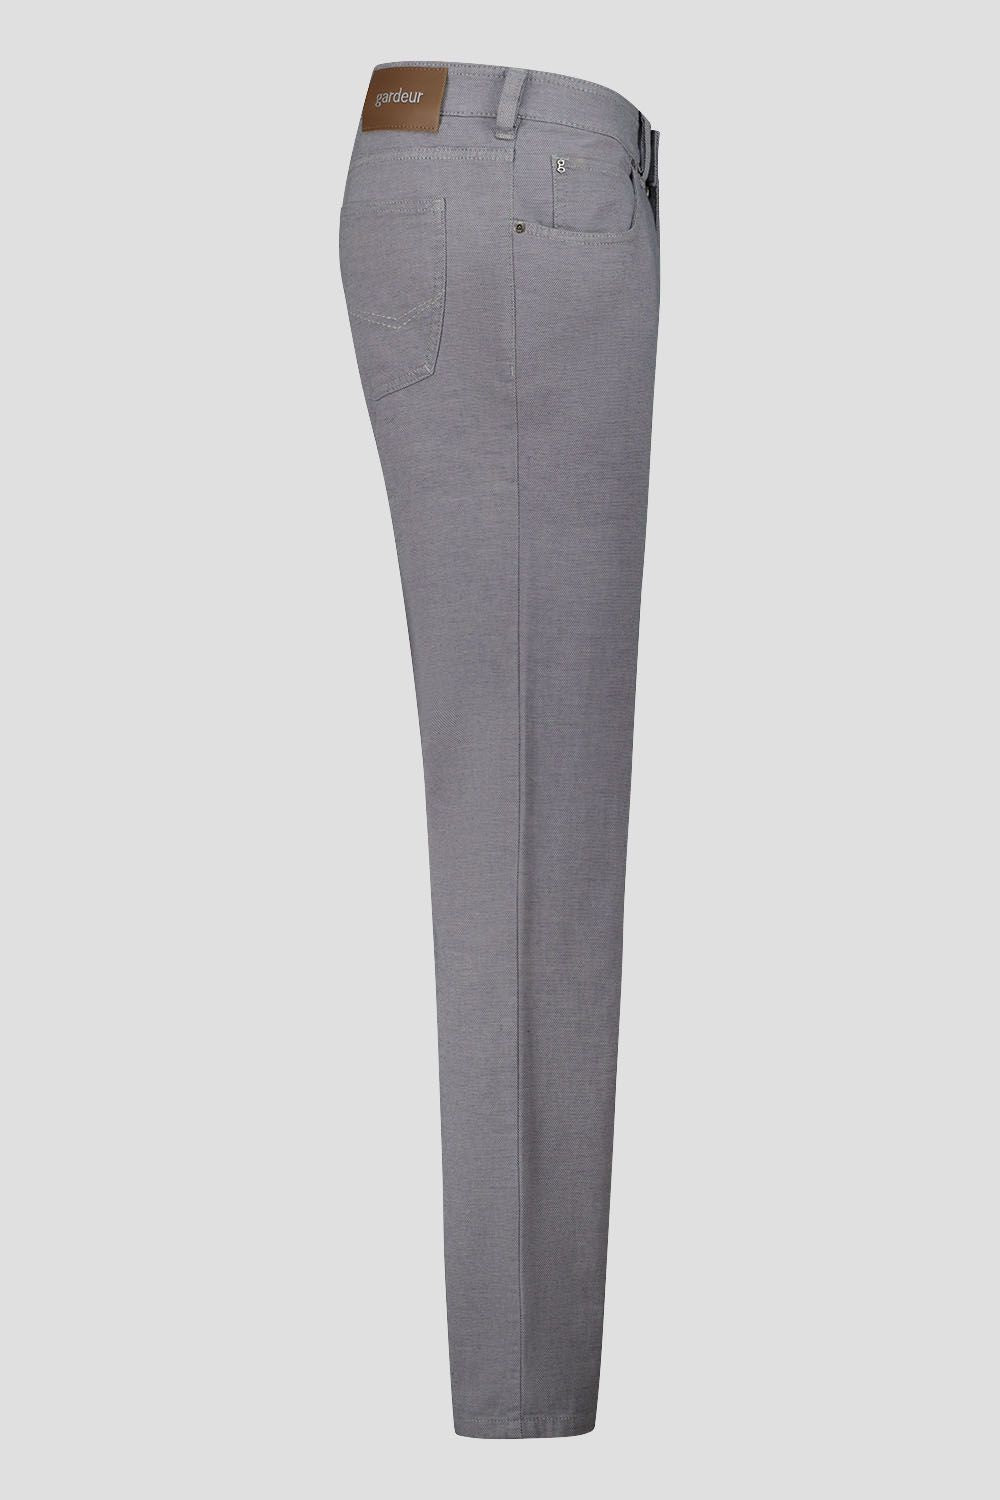 Gardeur Ewoolution Grey Modern Fit Cotton Jean (Bill-3-412051-2065)